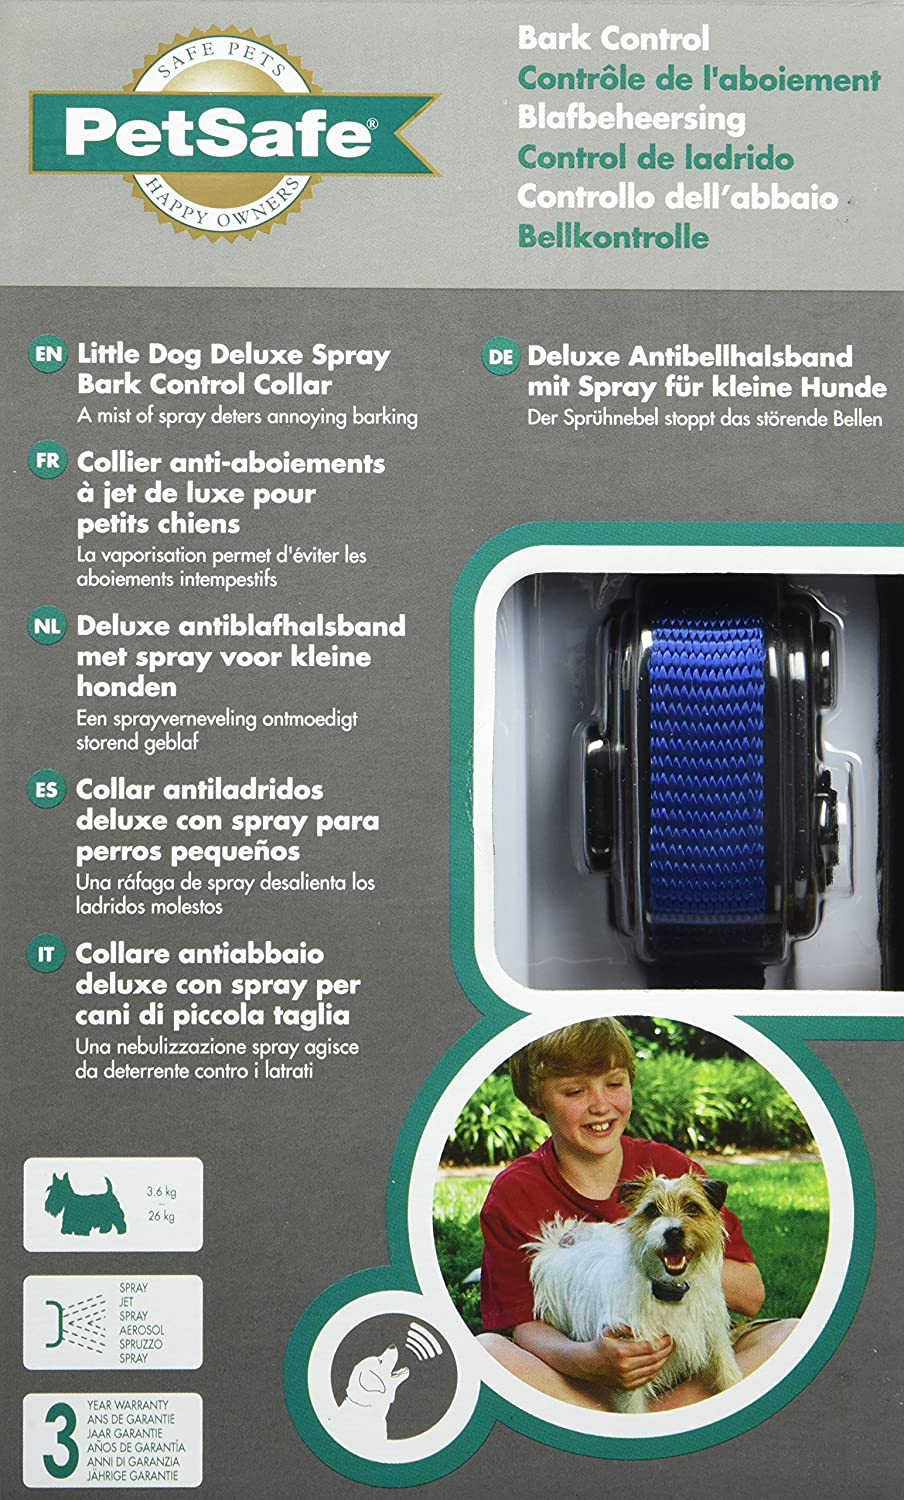 Deluxe antiblafhalsban met spray voor kleine honden PetSafe